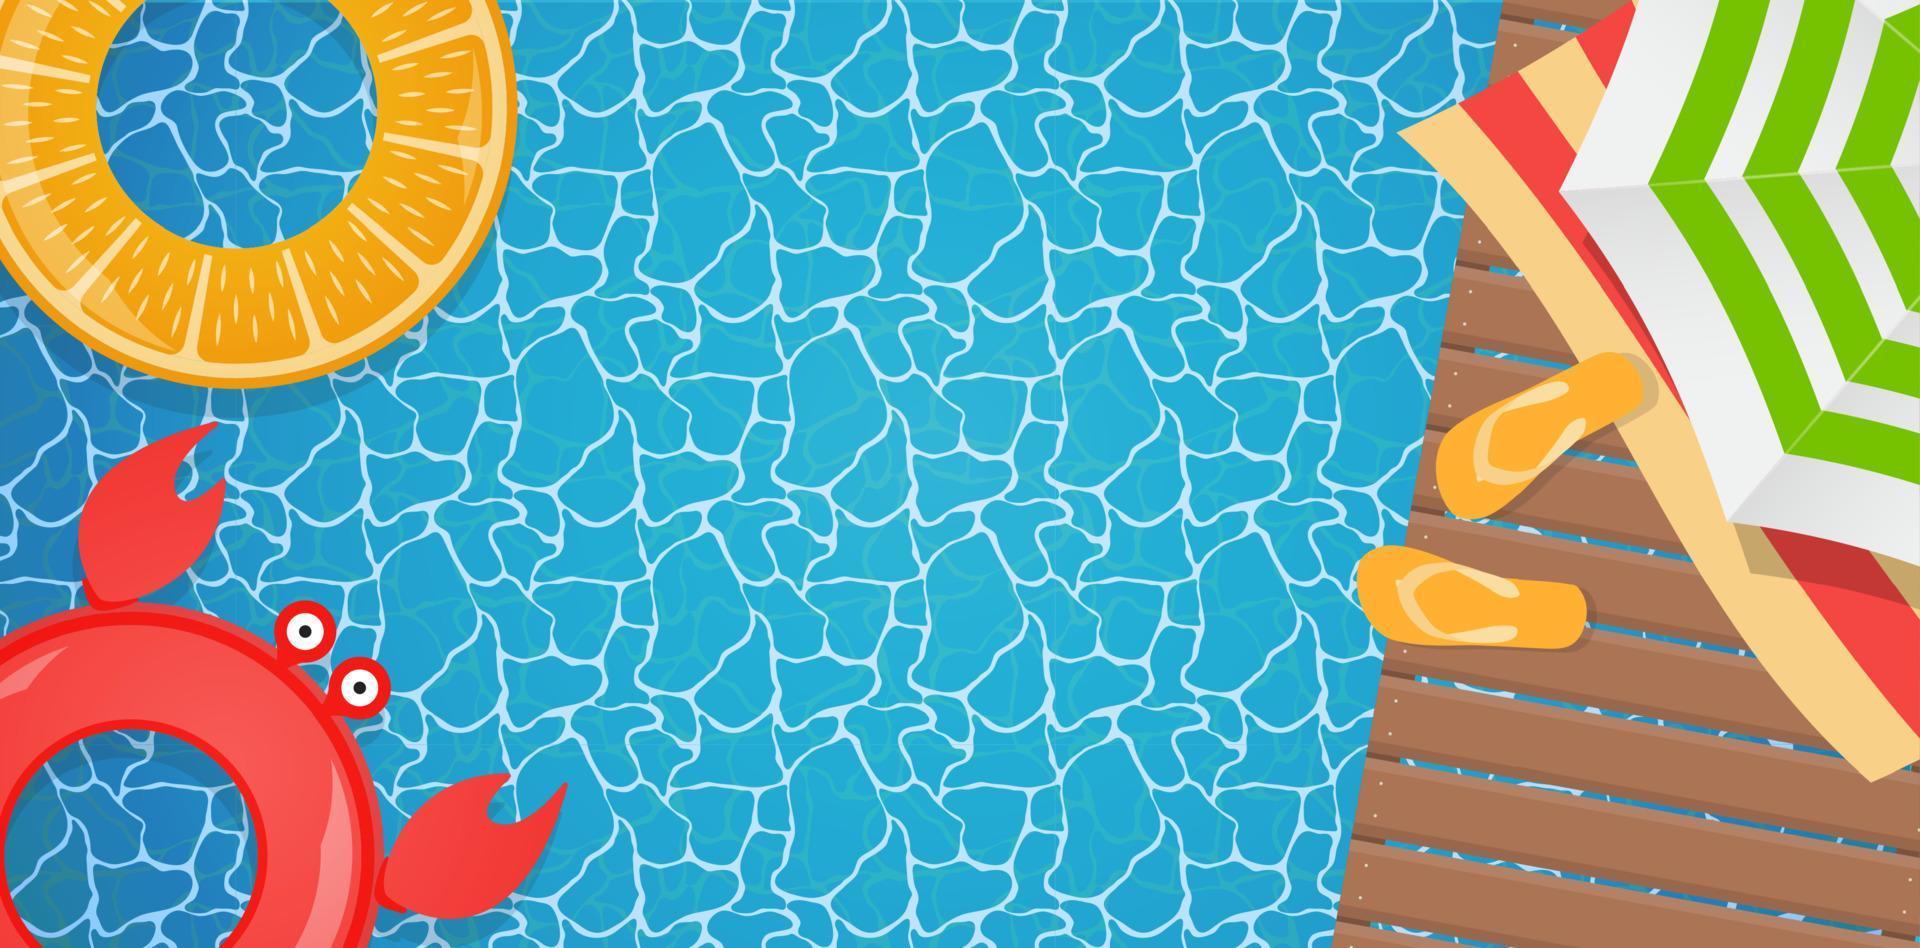 zomer achtergrond poster sjabloon met zwembad en reddingsboei. vector illustratie